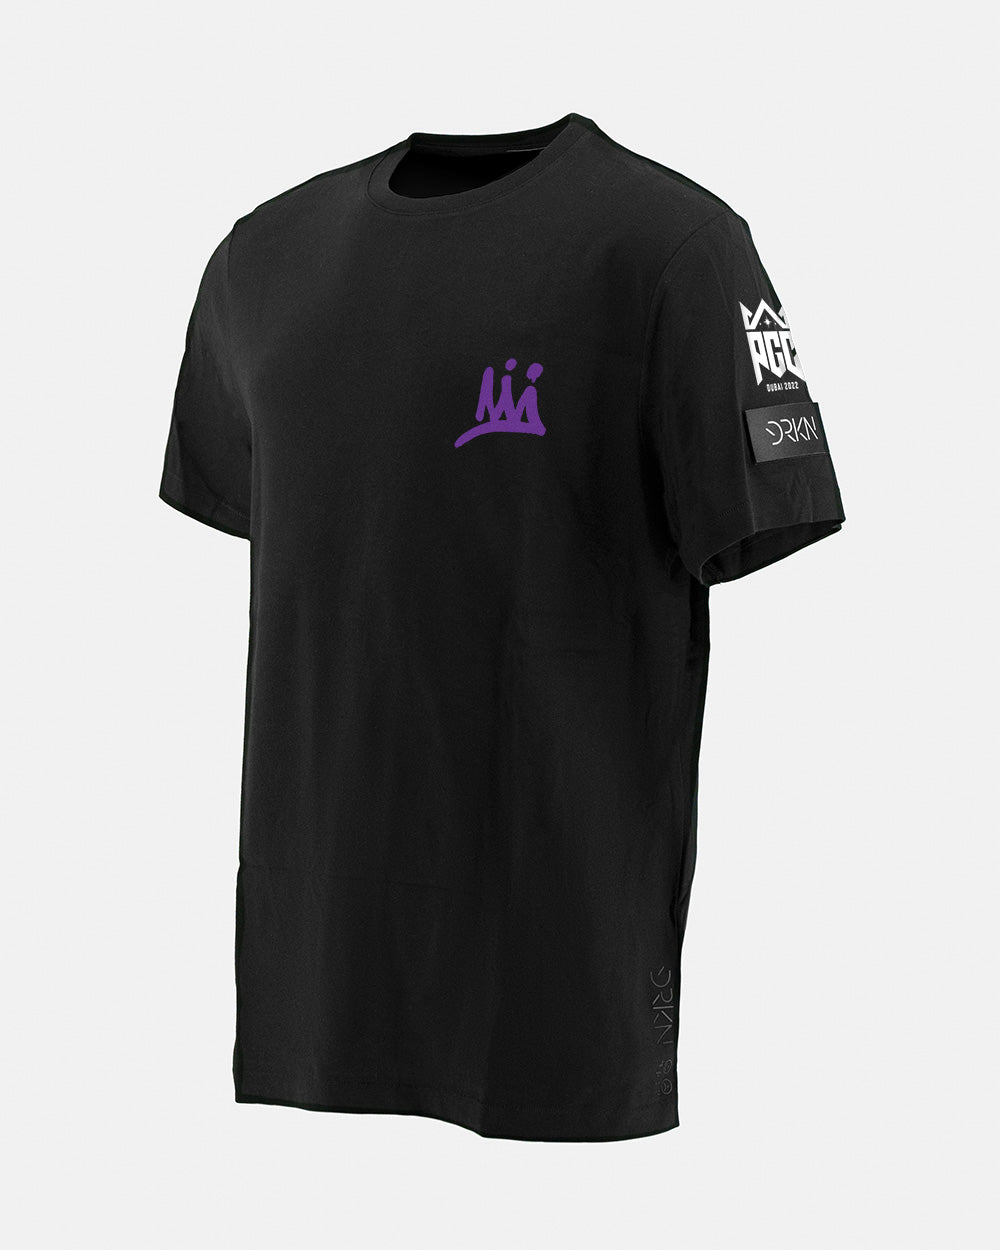 Das offizielle schwarze T-Shirt der PGC 2022 